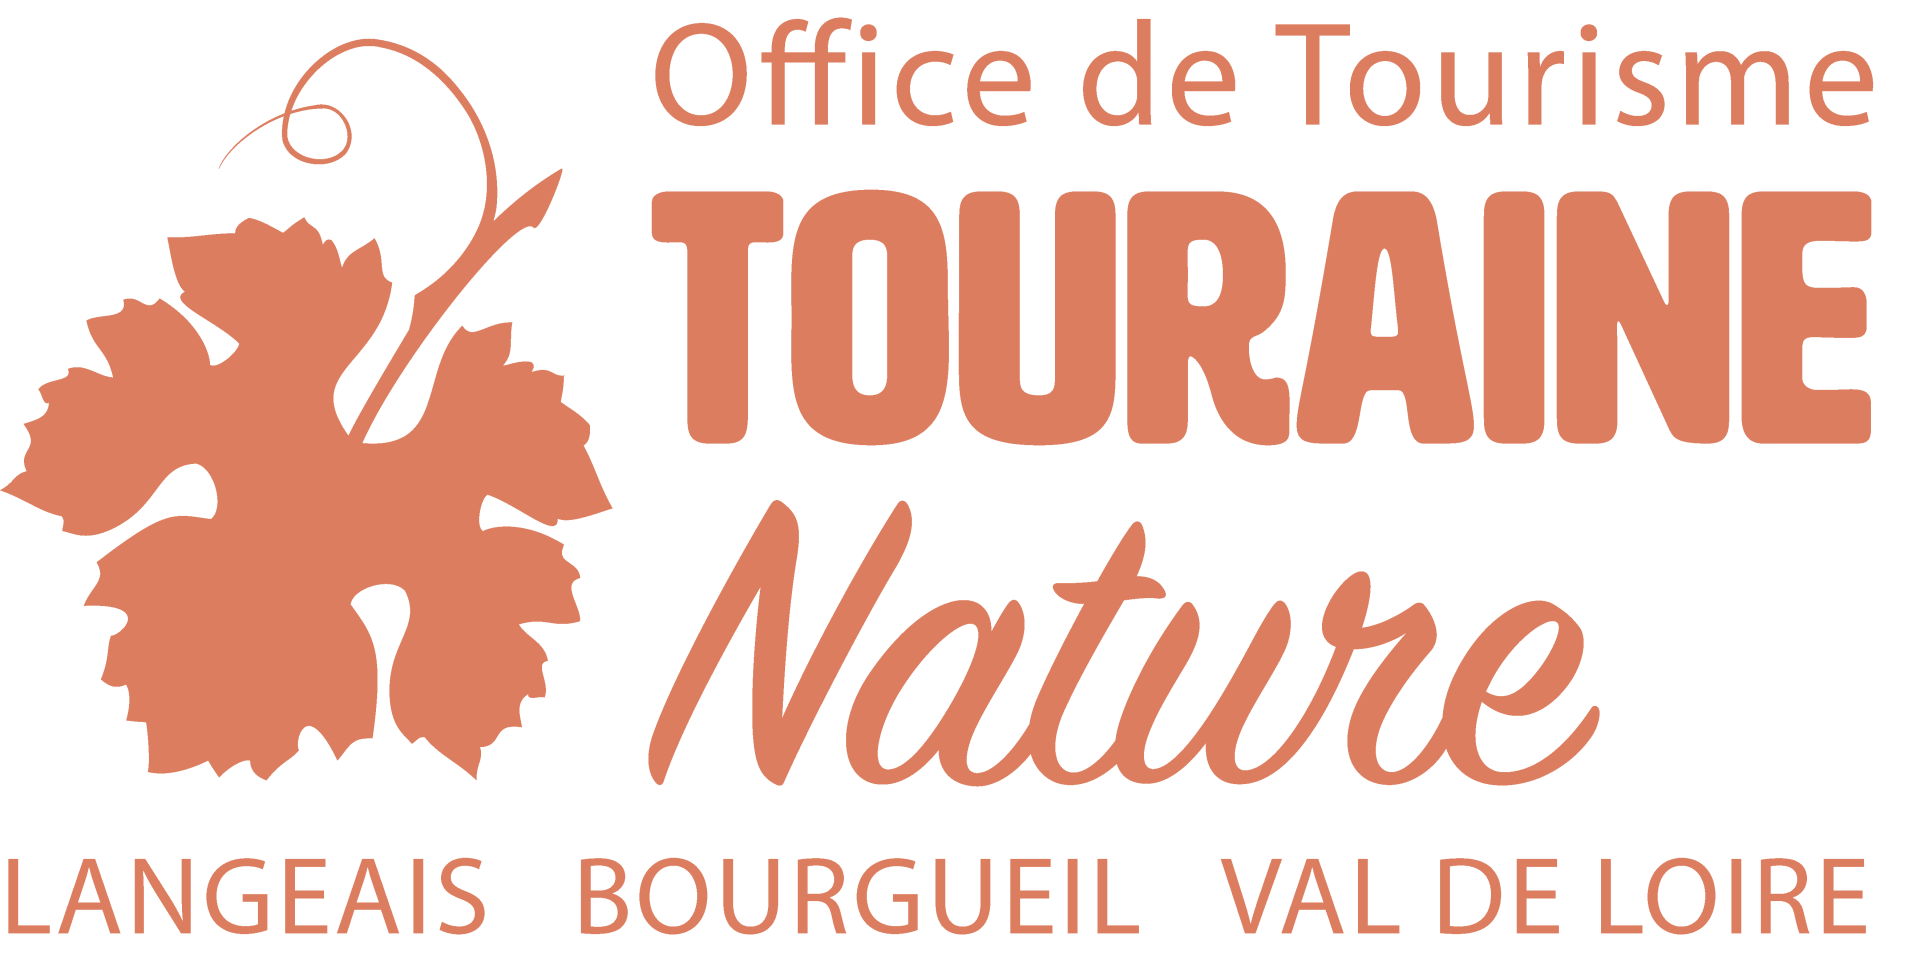 OFFICE DE TOURISME TOURAINE